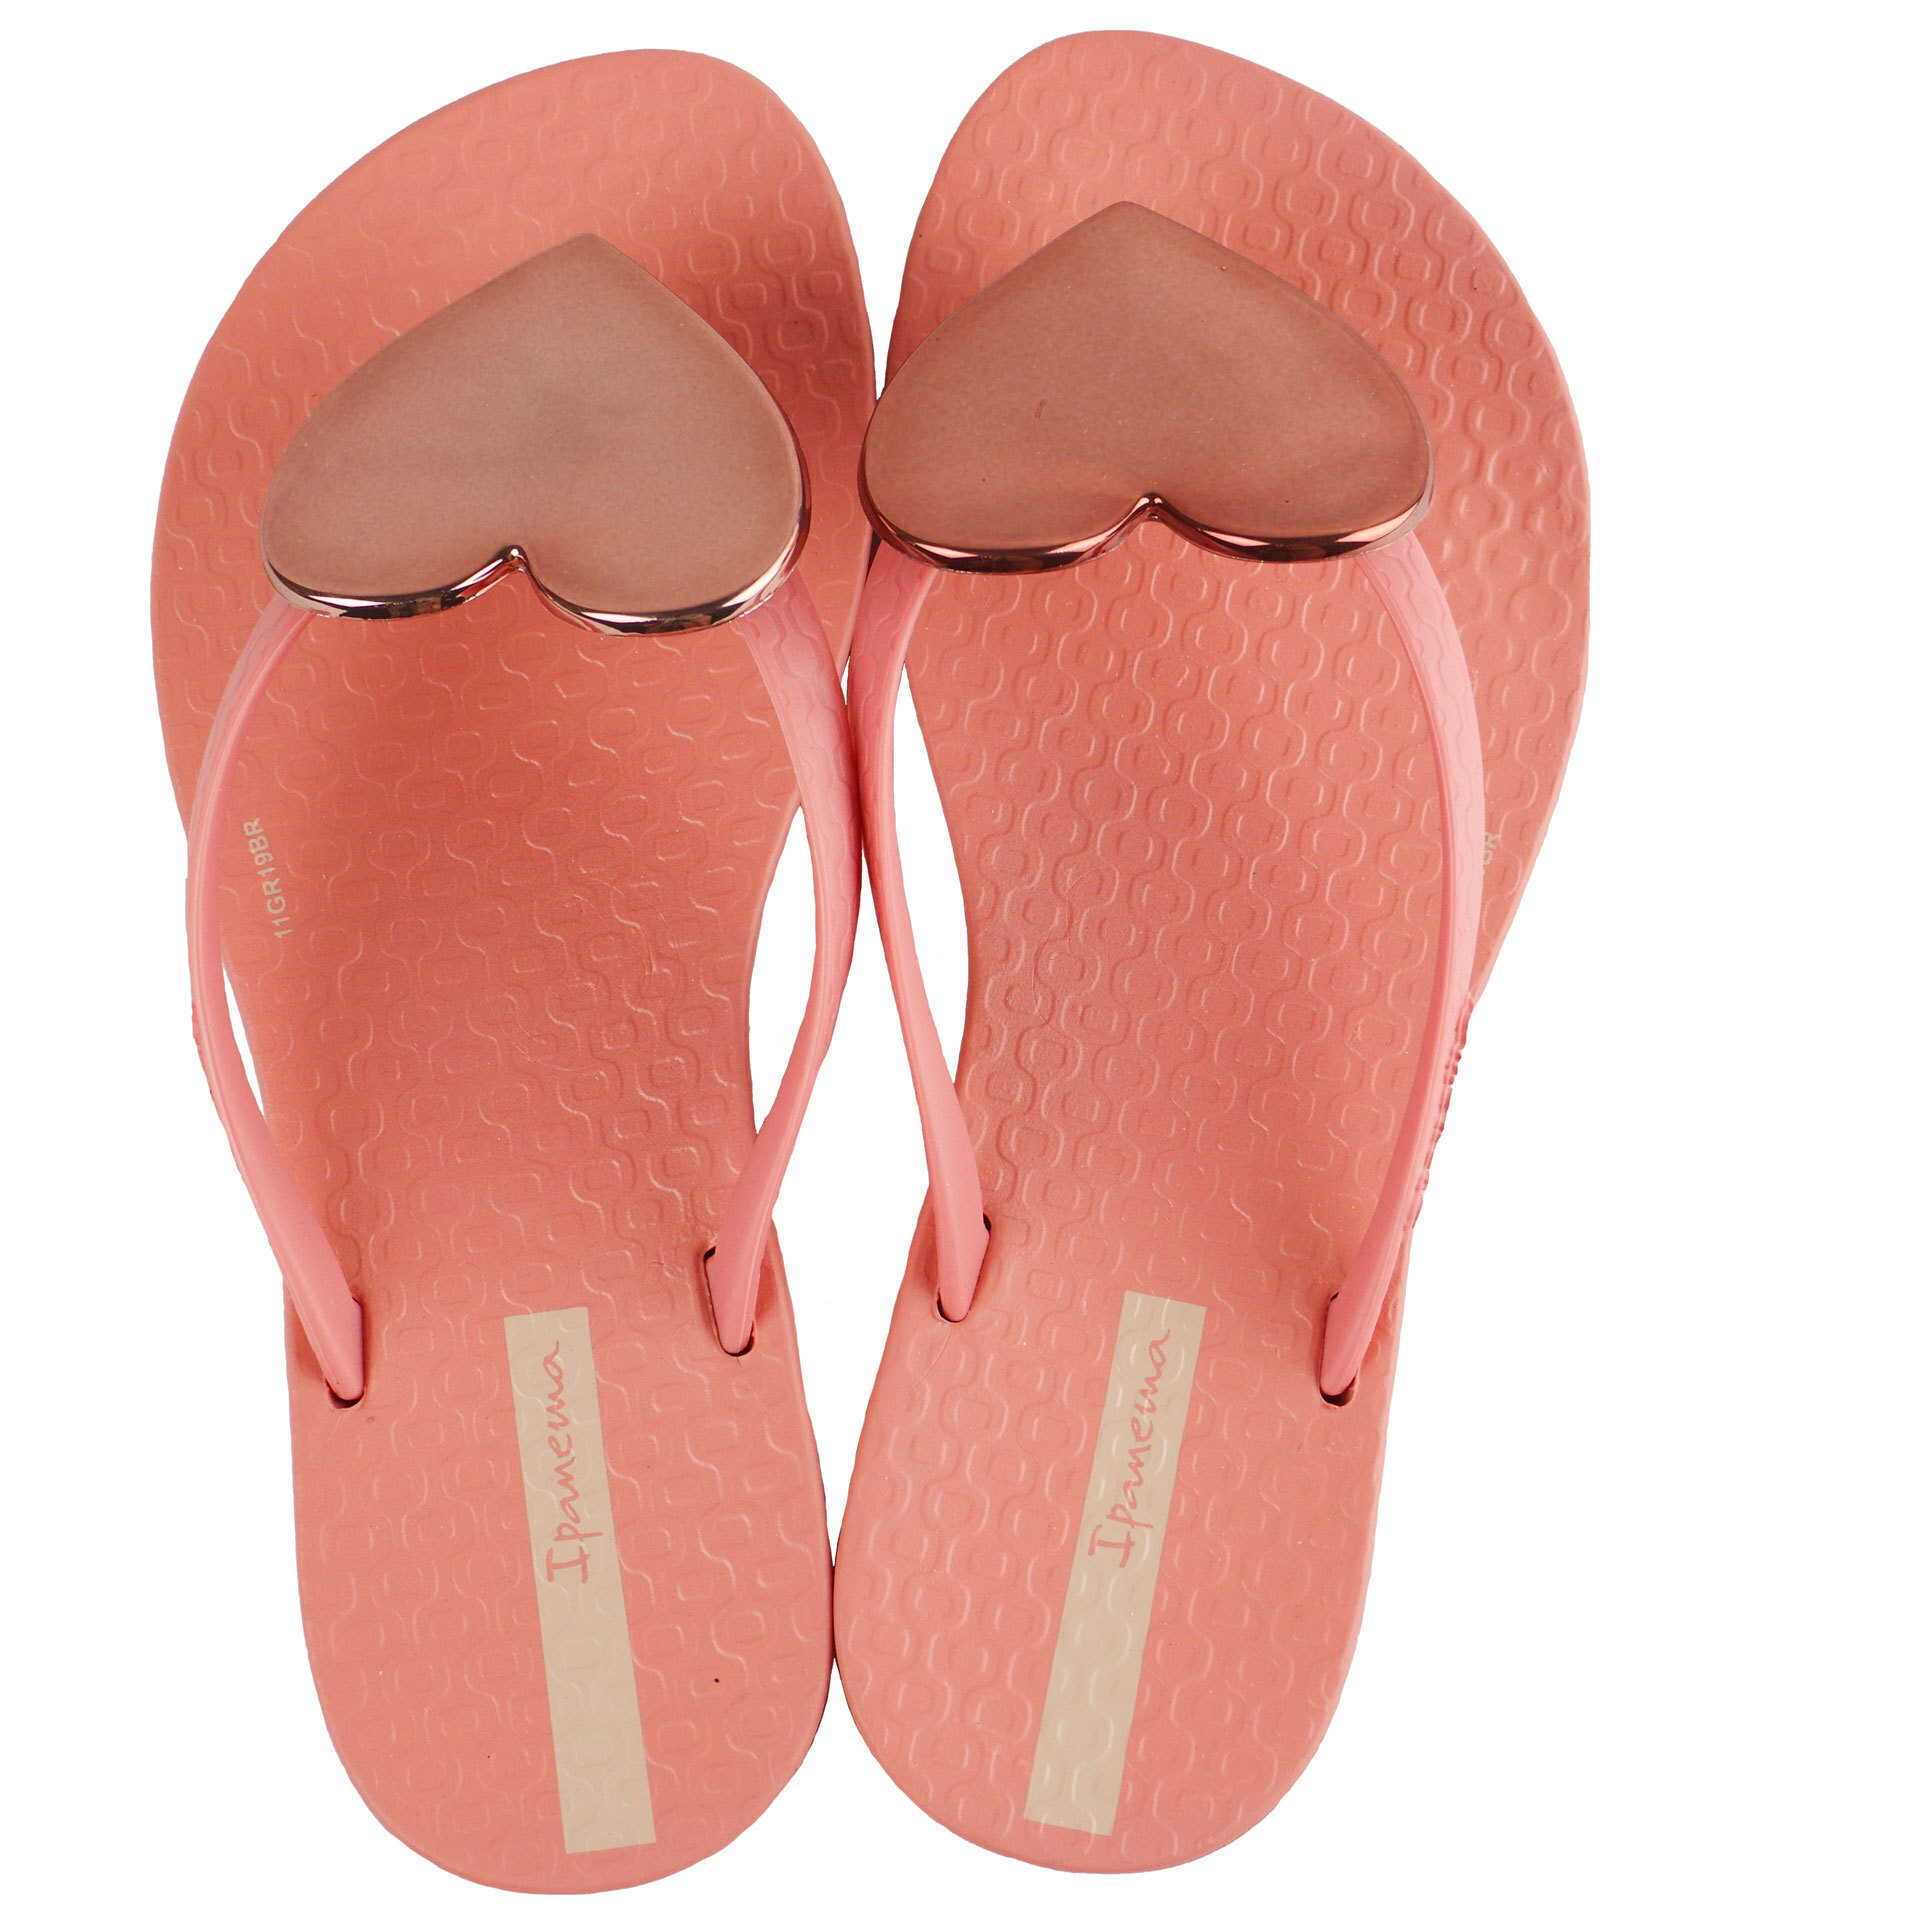 Пляжная обувь для девочки - шлепки детские (1997) 27-36 размеры, цвет пудра – Sole Kids